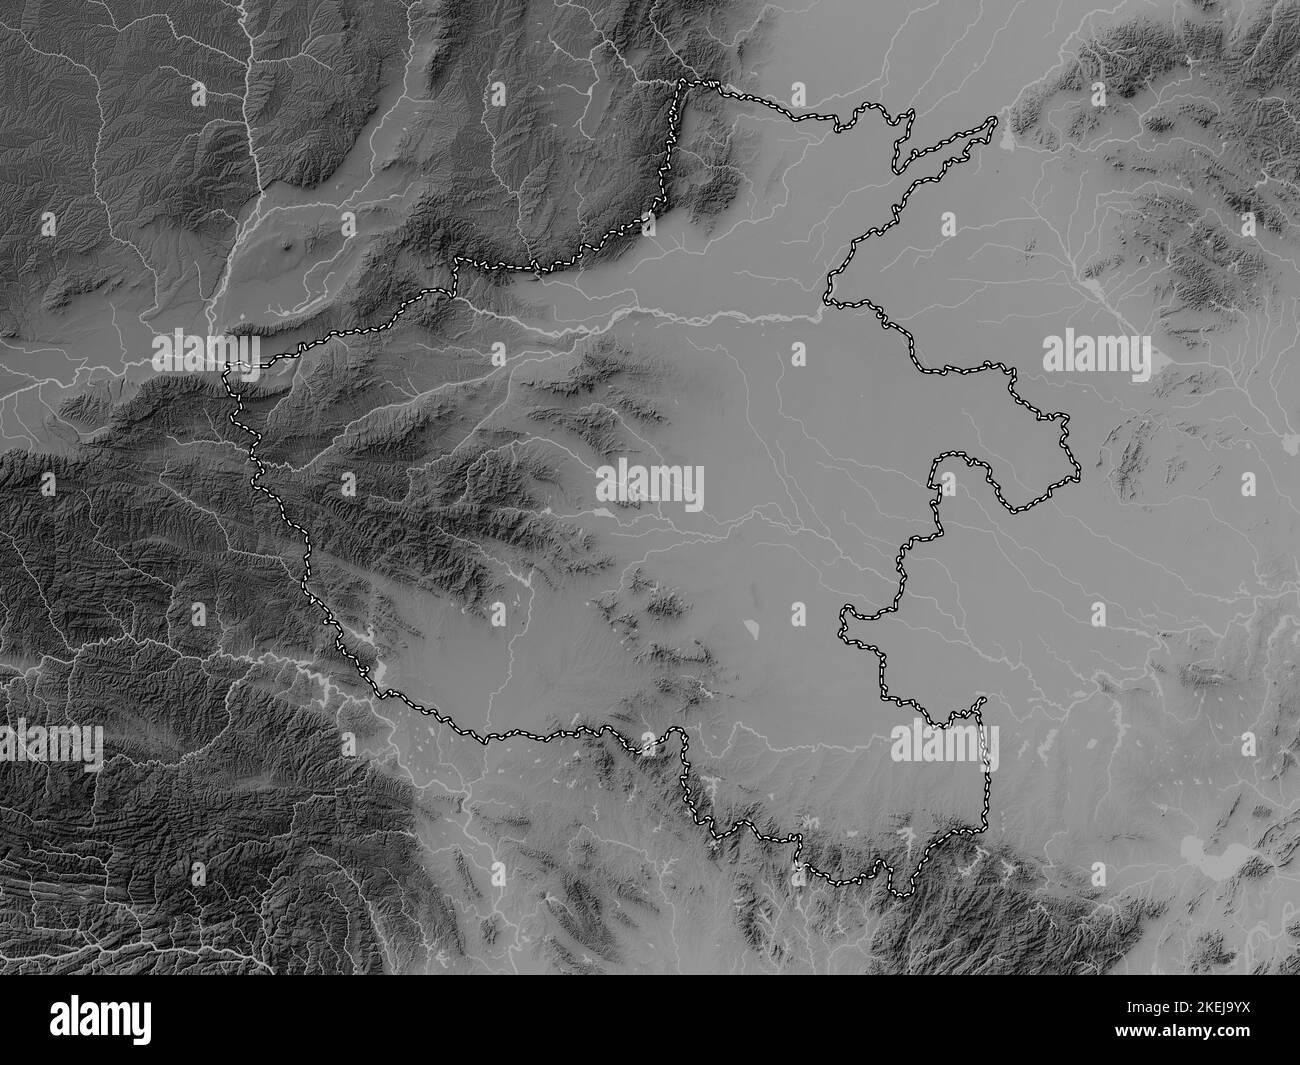 Henan, Provinz China. Höhenkarte in Graustufen mit Seen und Flüssen Stockfoto